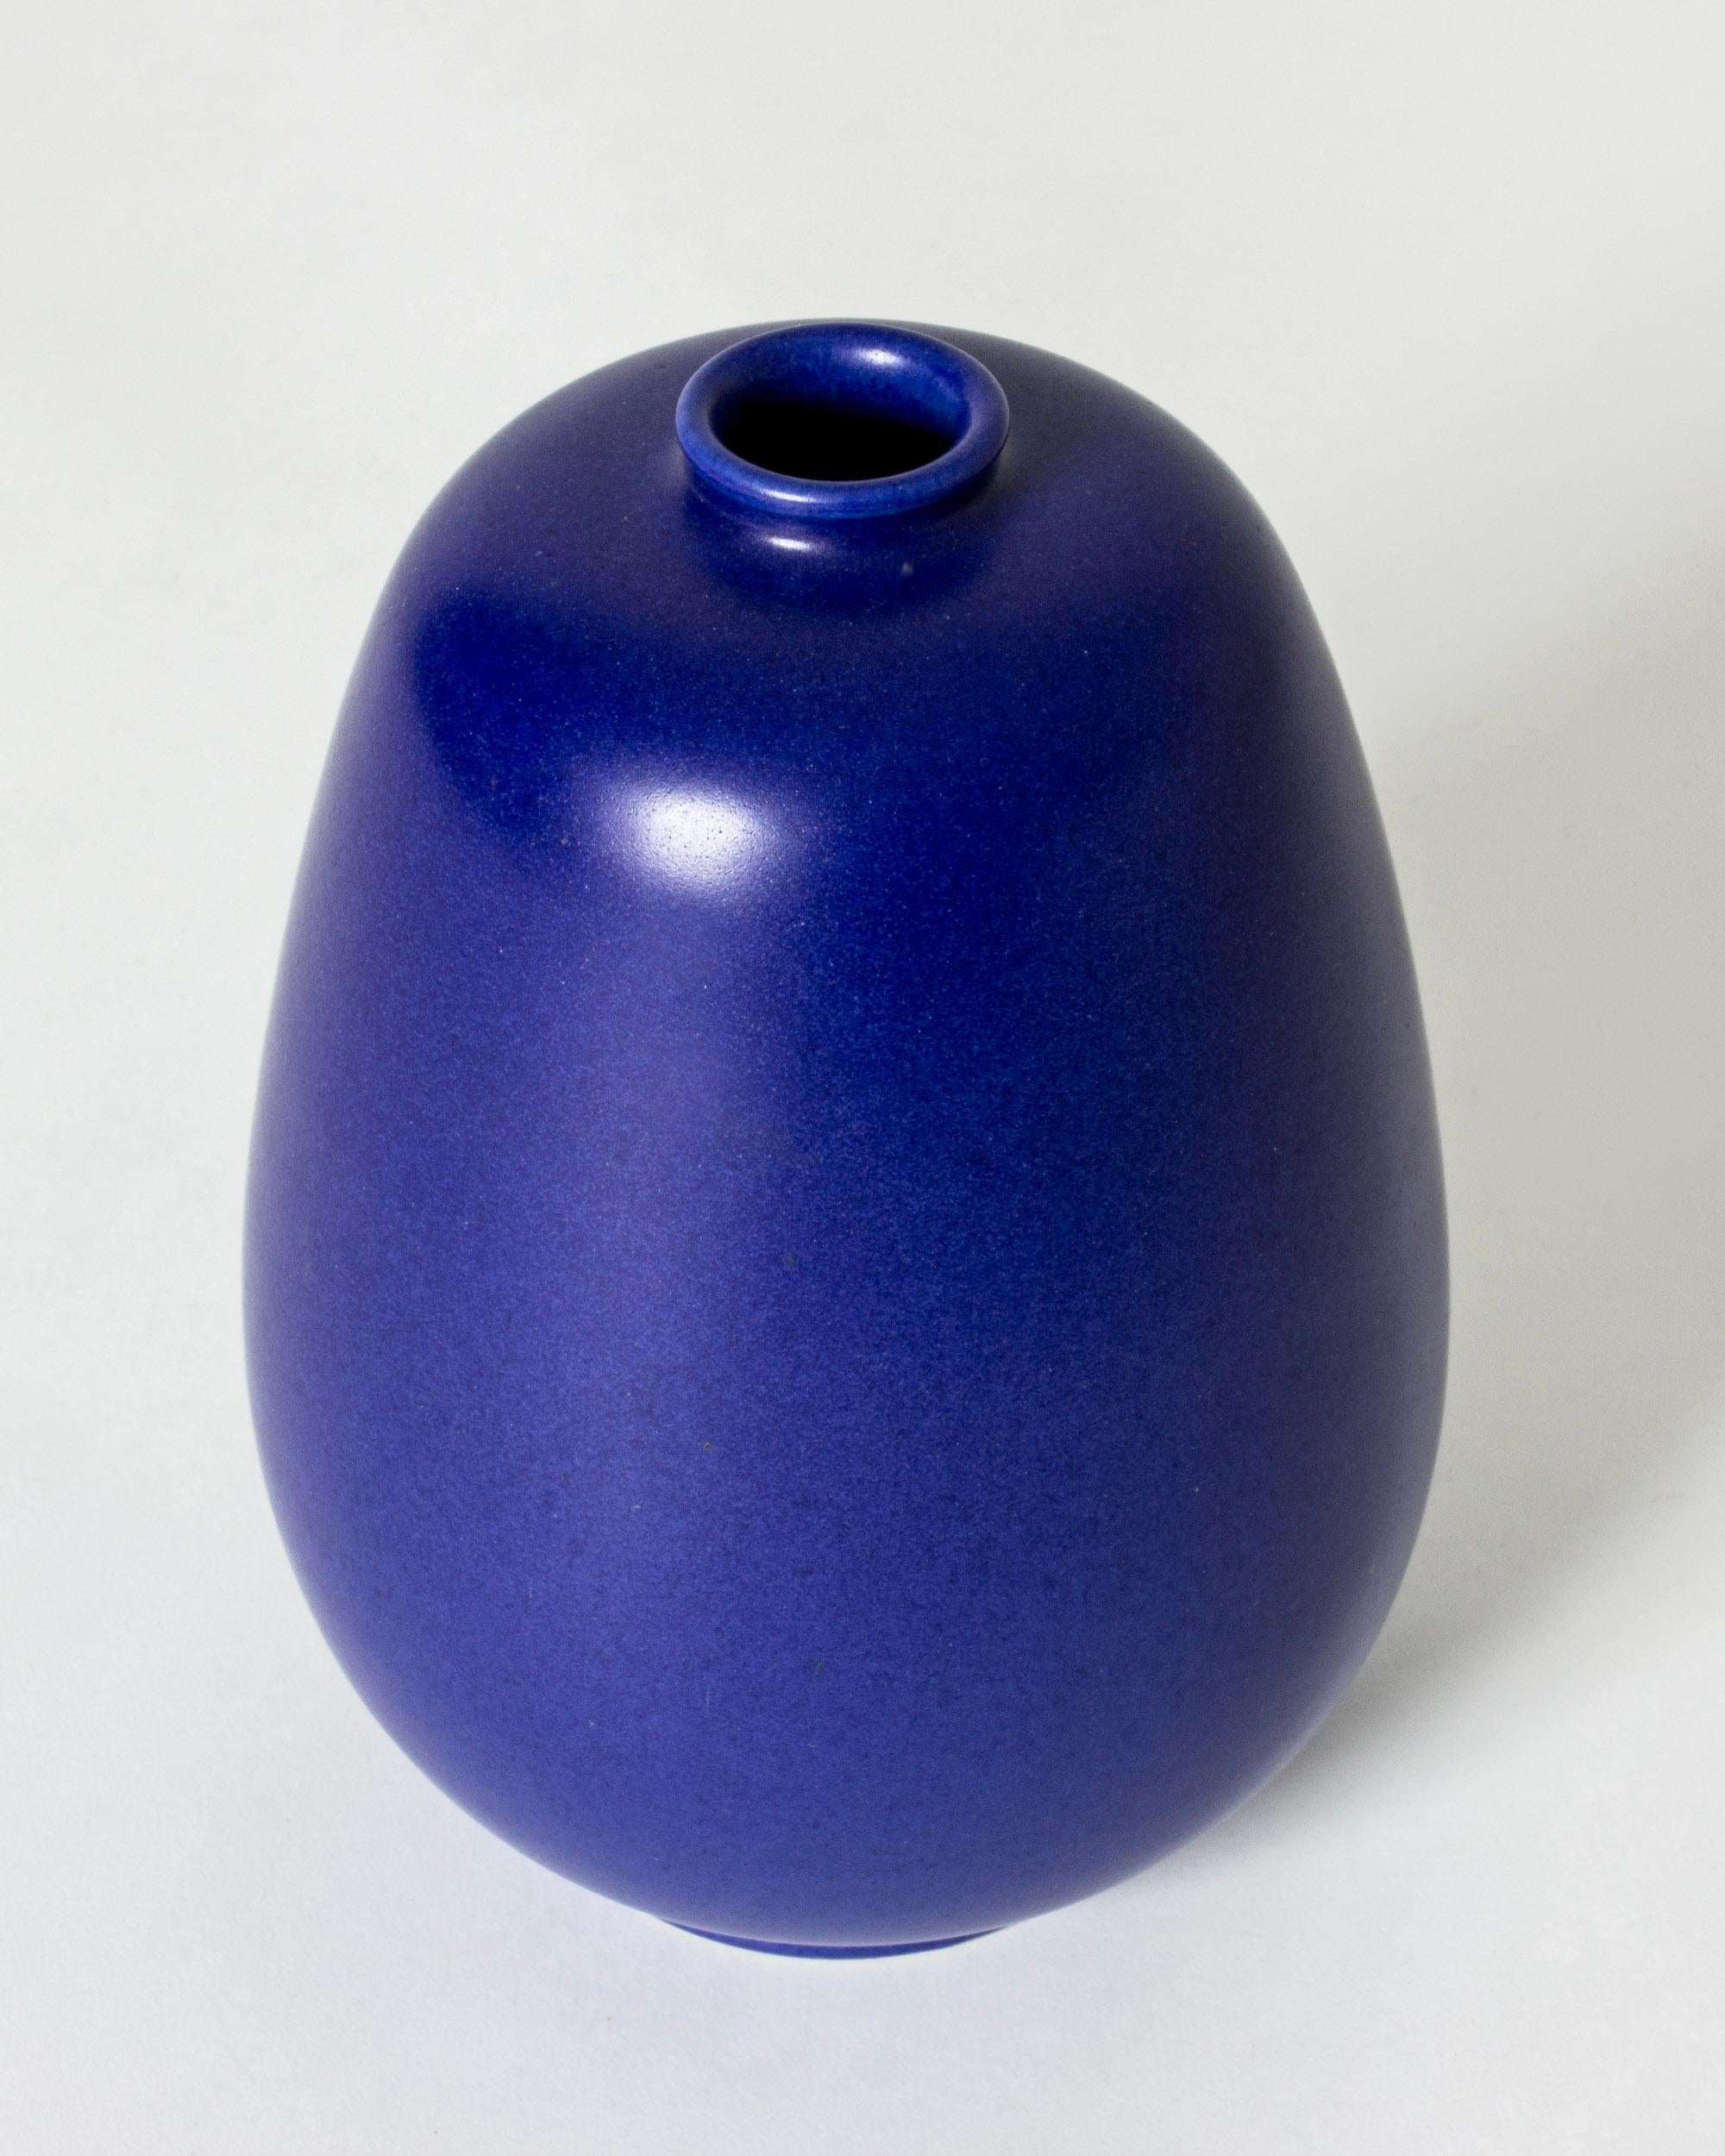 Vase en grès d'Eric et Ingrid Triller, d'une forme épurée et compacte. Belle glaçure opaque bleu cobalt.

Fuyant la Seconde Guerre mondiale, les potiers allemands Eric et Ingrid Triller se sont installés dans le village industriel de Tobo et ont